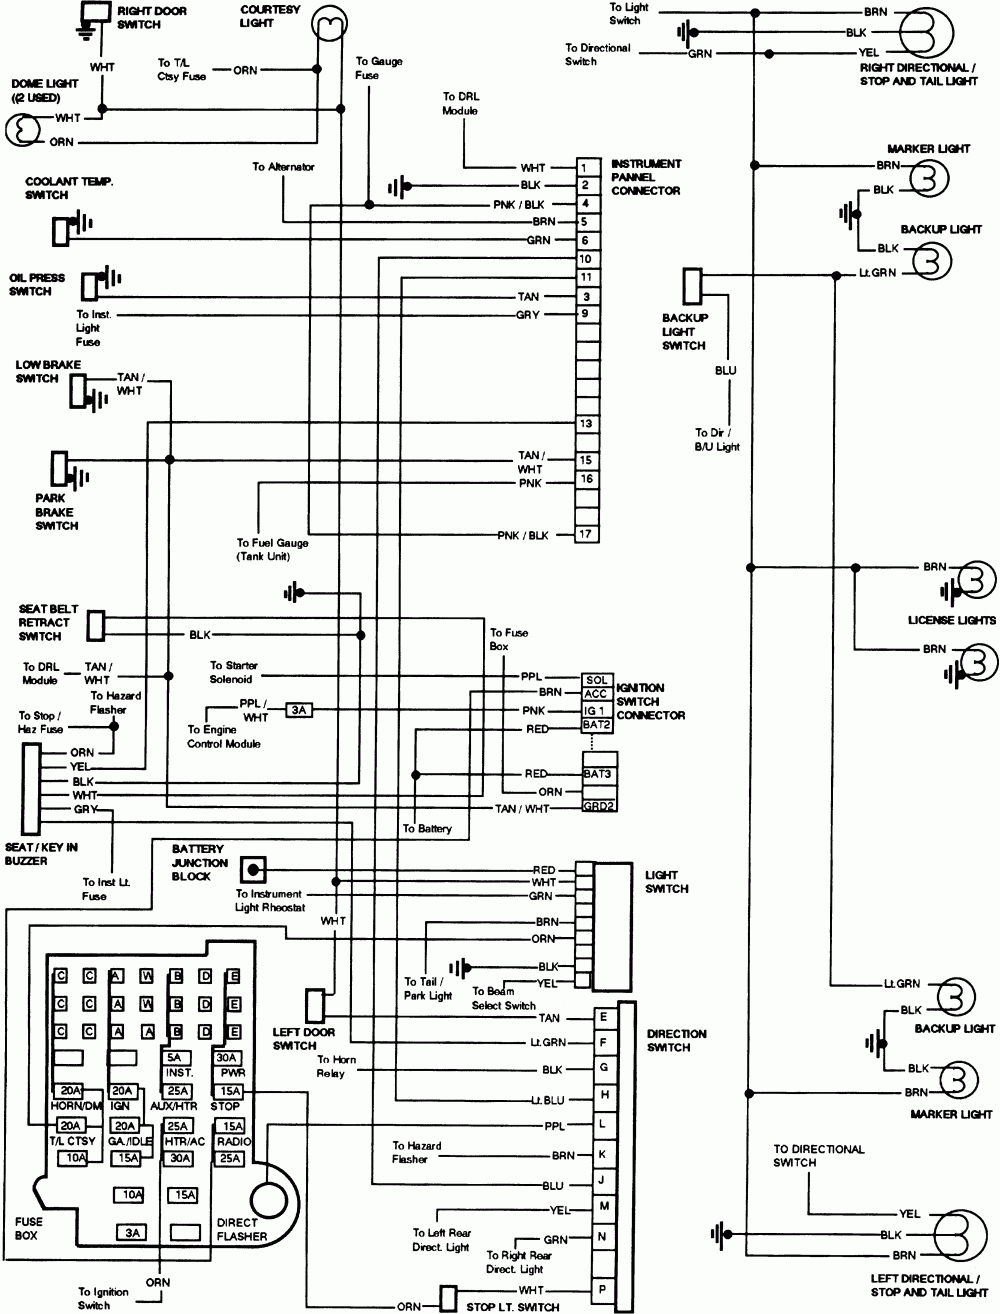 1983 Chevy Truck Alternator Wiring Diagram | Schematic Diagram - 2003 Chevy Silverado Wiring Diagram